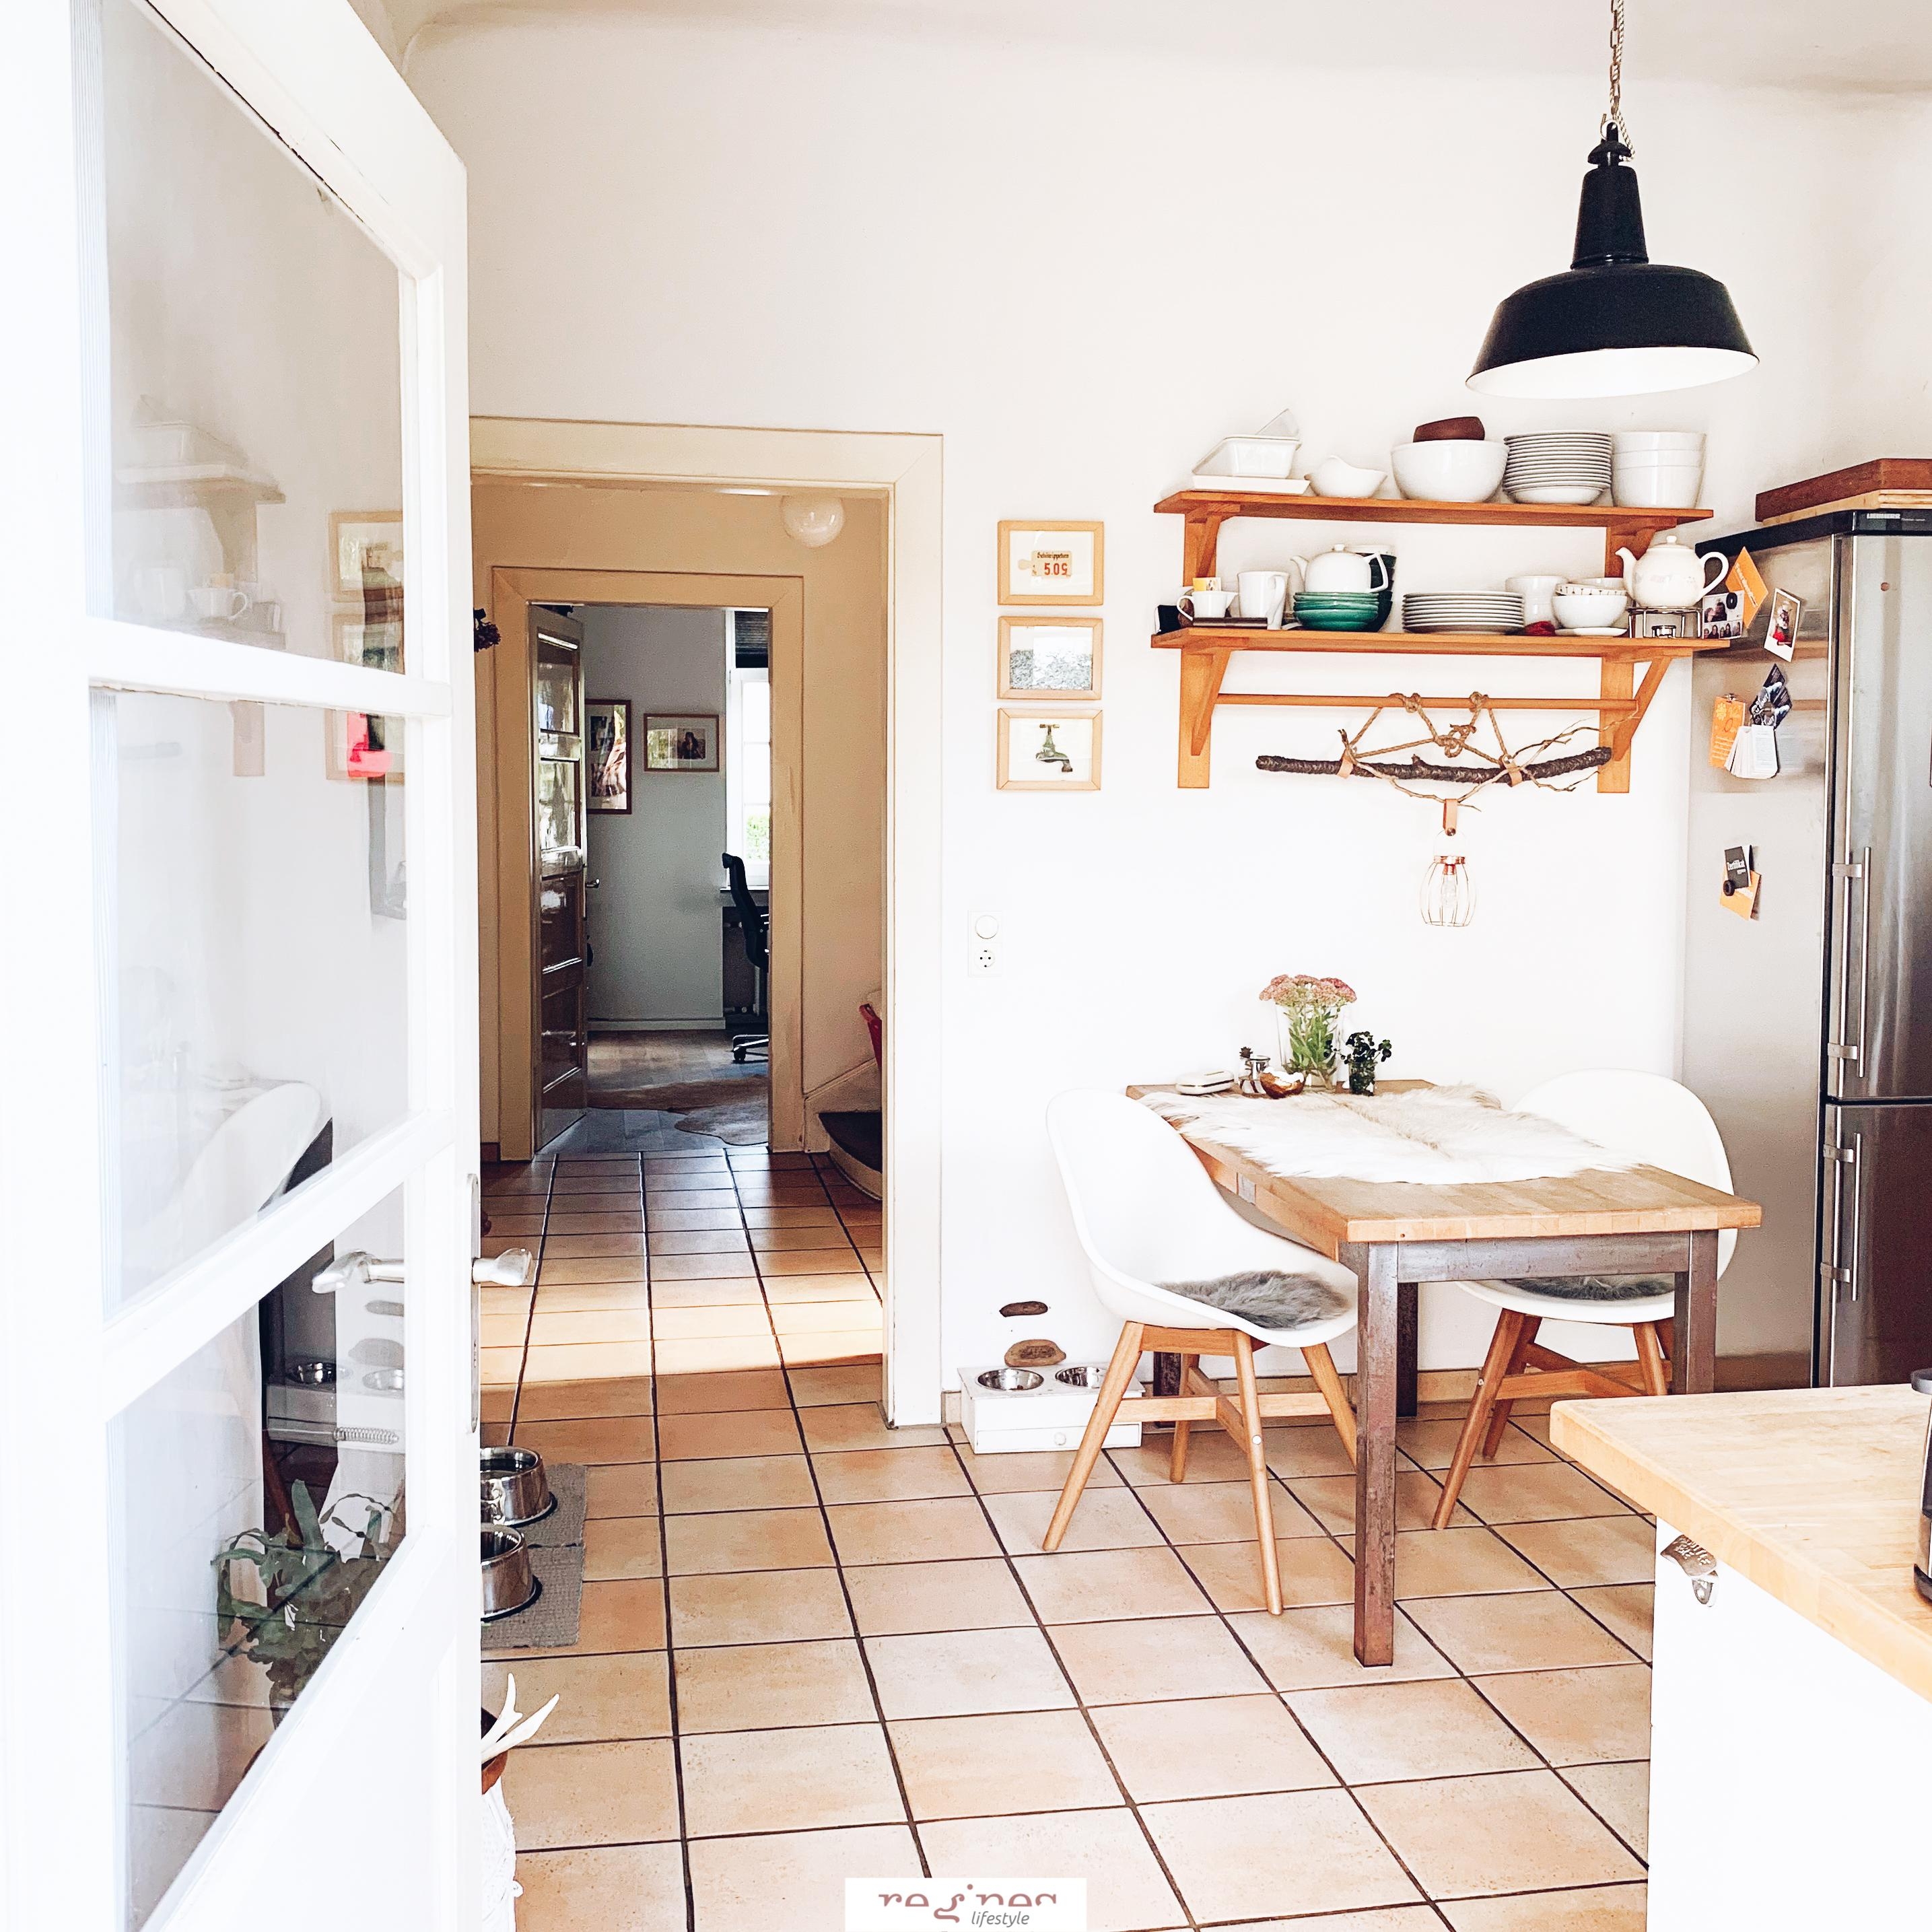 Unserer Küchenbereich, hell und gemütlich ...

#kitchen #küche #industrial #gemütlich #holz #terrakottafliesen 